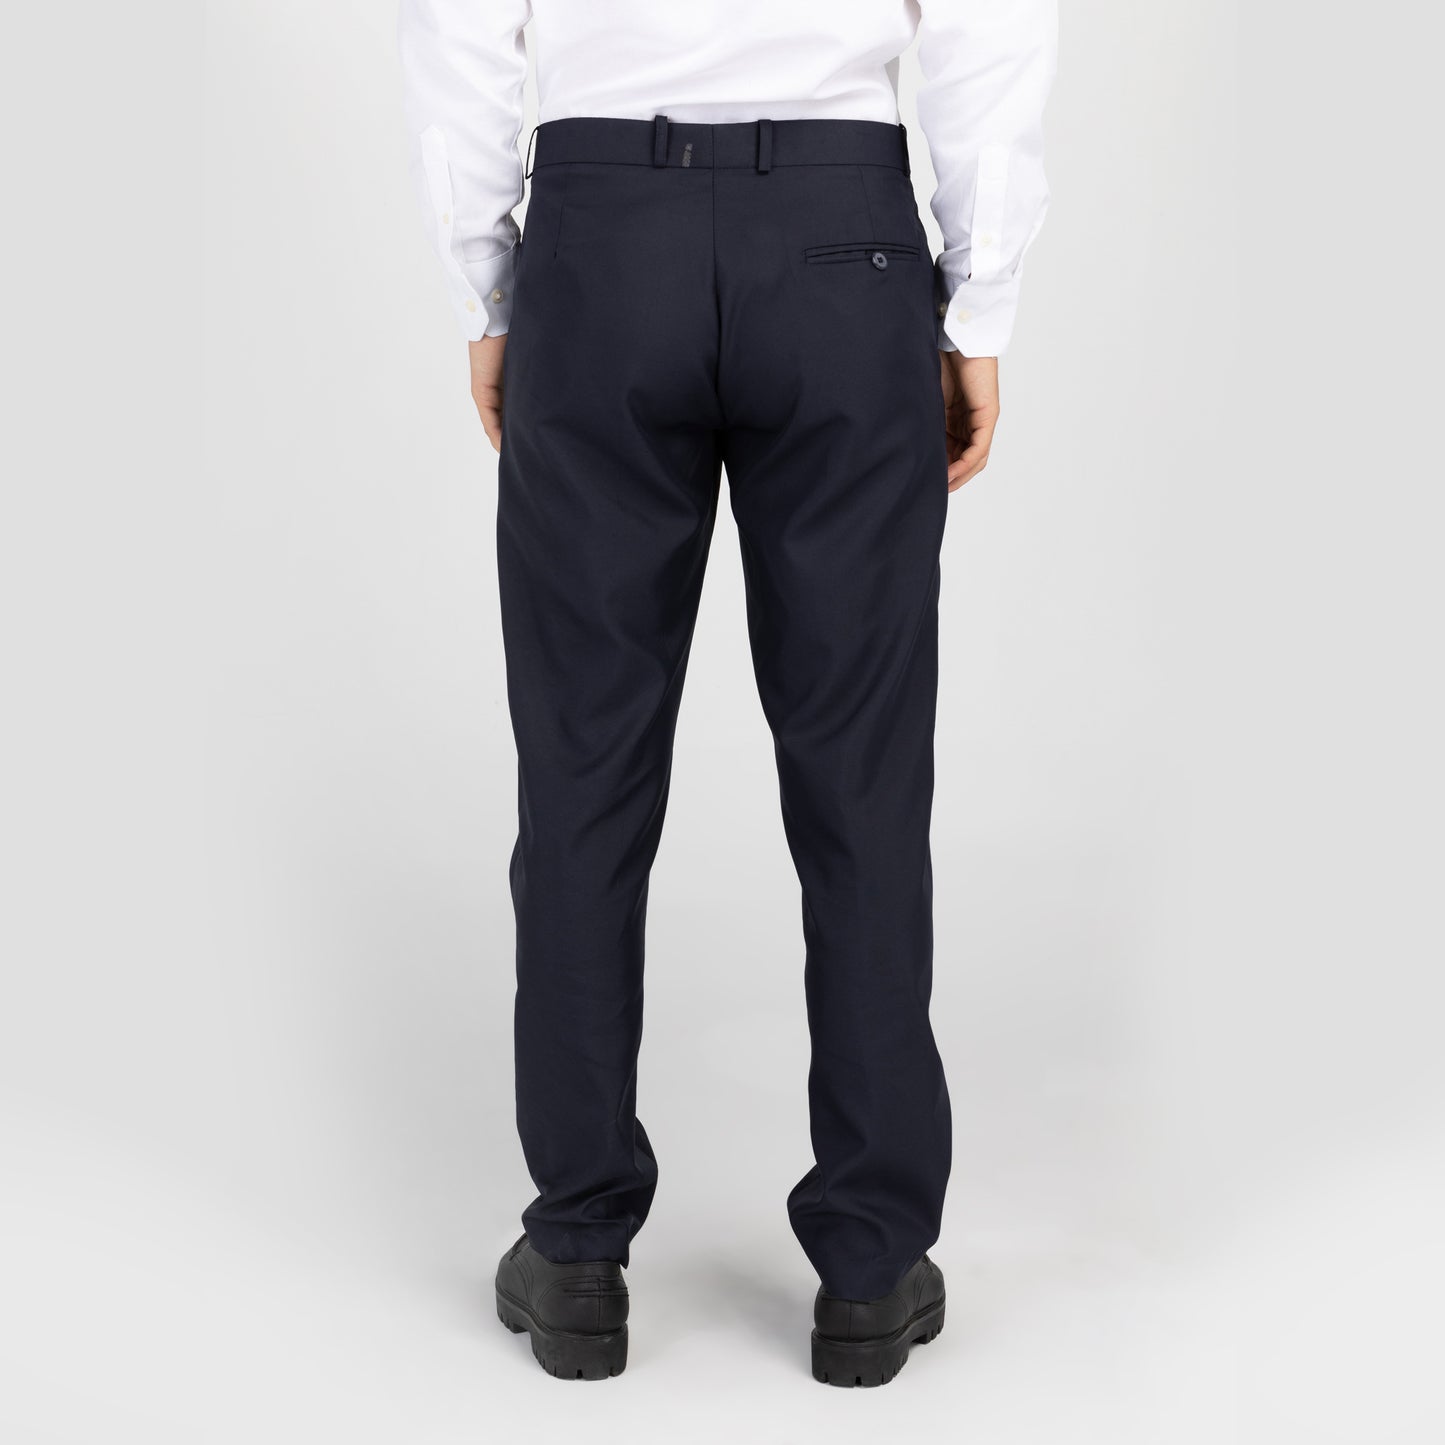 PROFILE Men's Corporate Wear Office Dress Pants - Navy - IDENTITY Apparel Shop